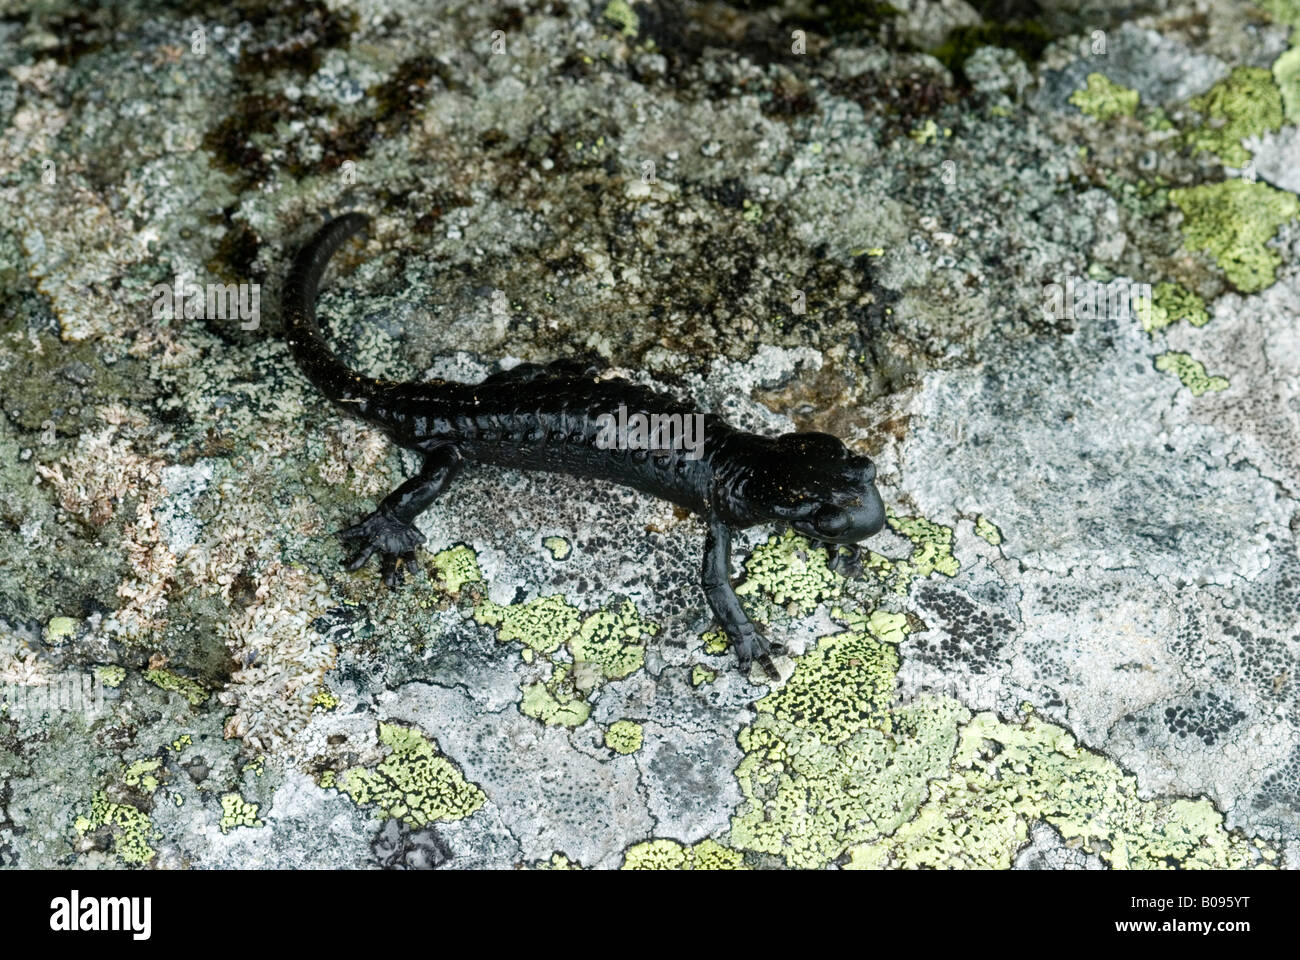 Alpine Salamander (Salamandra atra), Kellerjoch, Tux Alps, Tirol, Austria Stock Photo